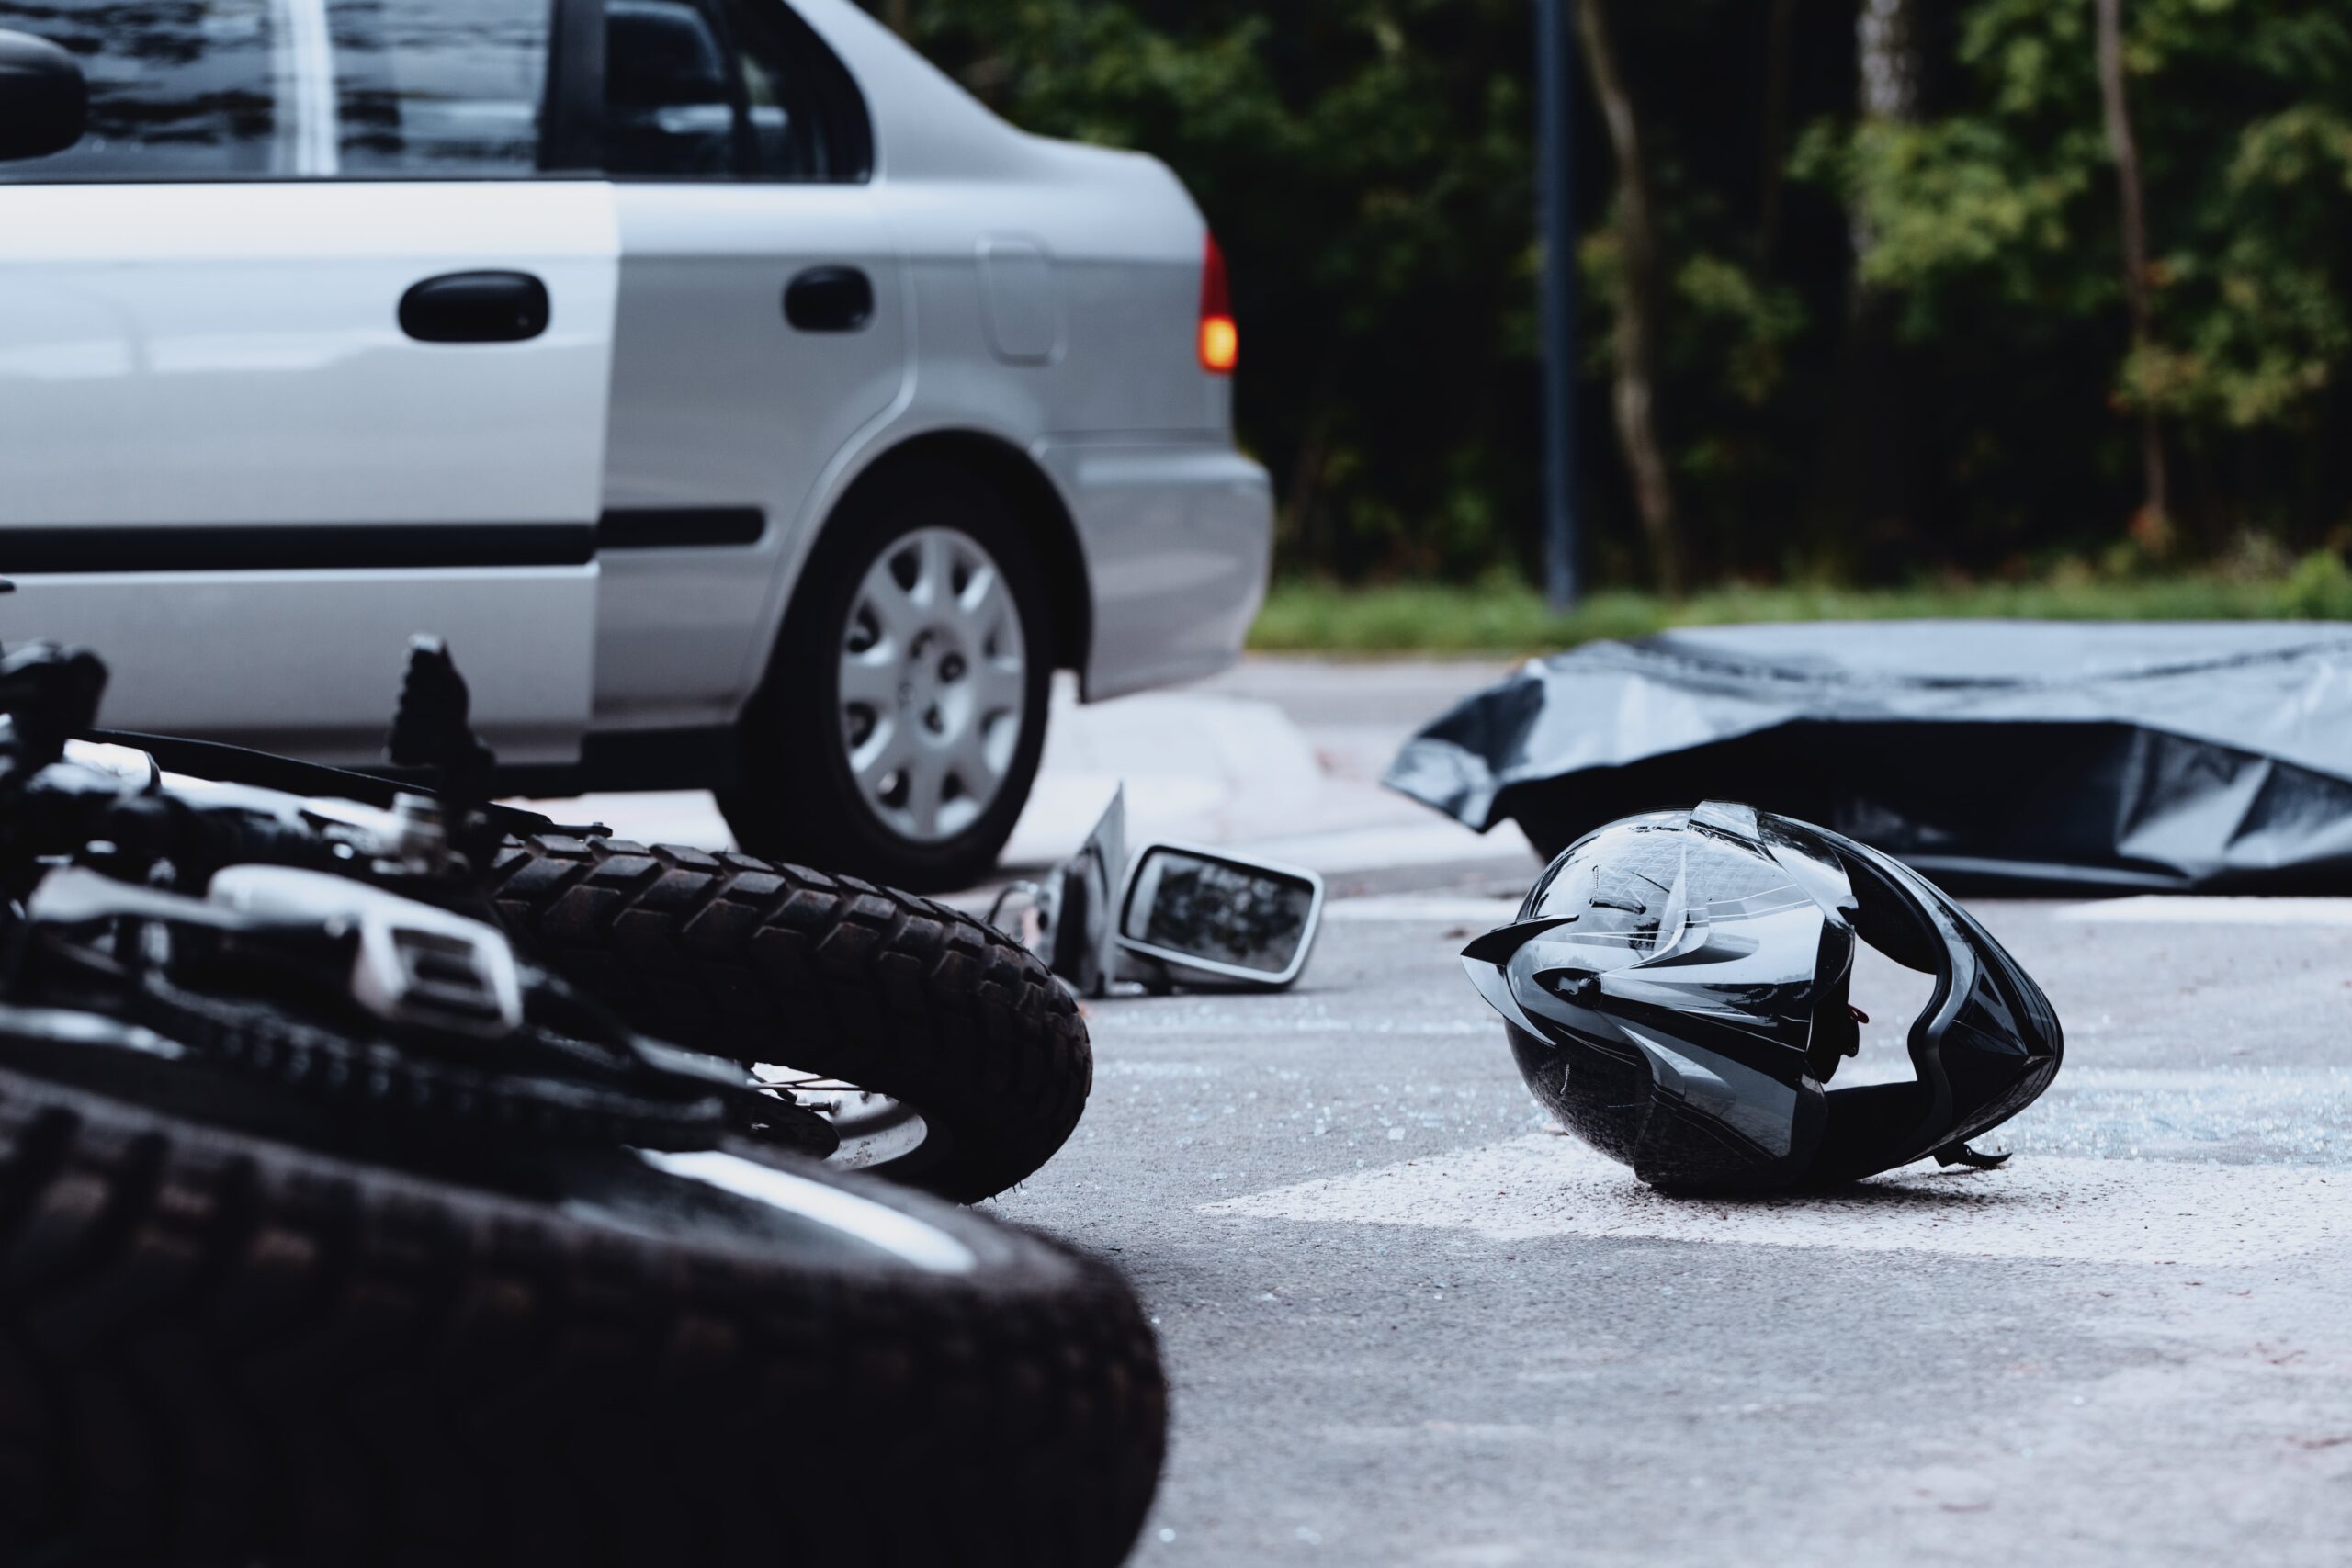 Motorcycle Accident Lawyer Baton Rouge, LA